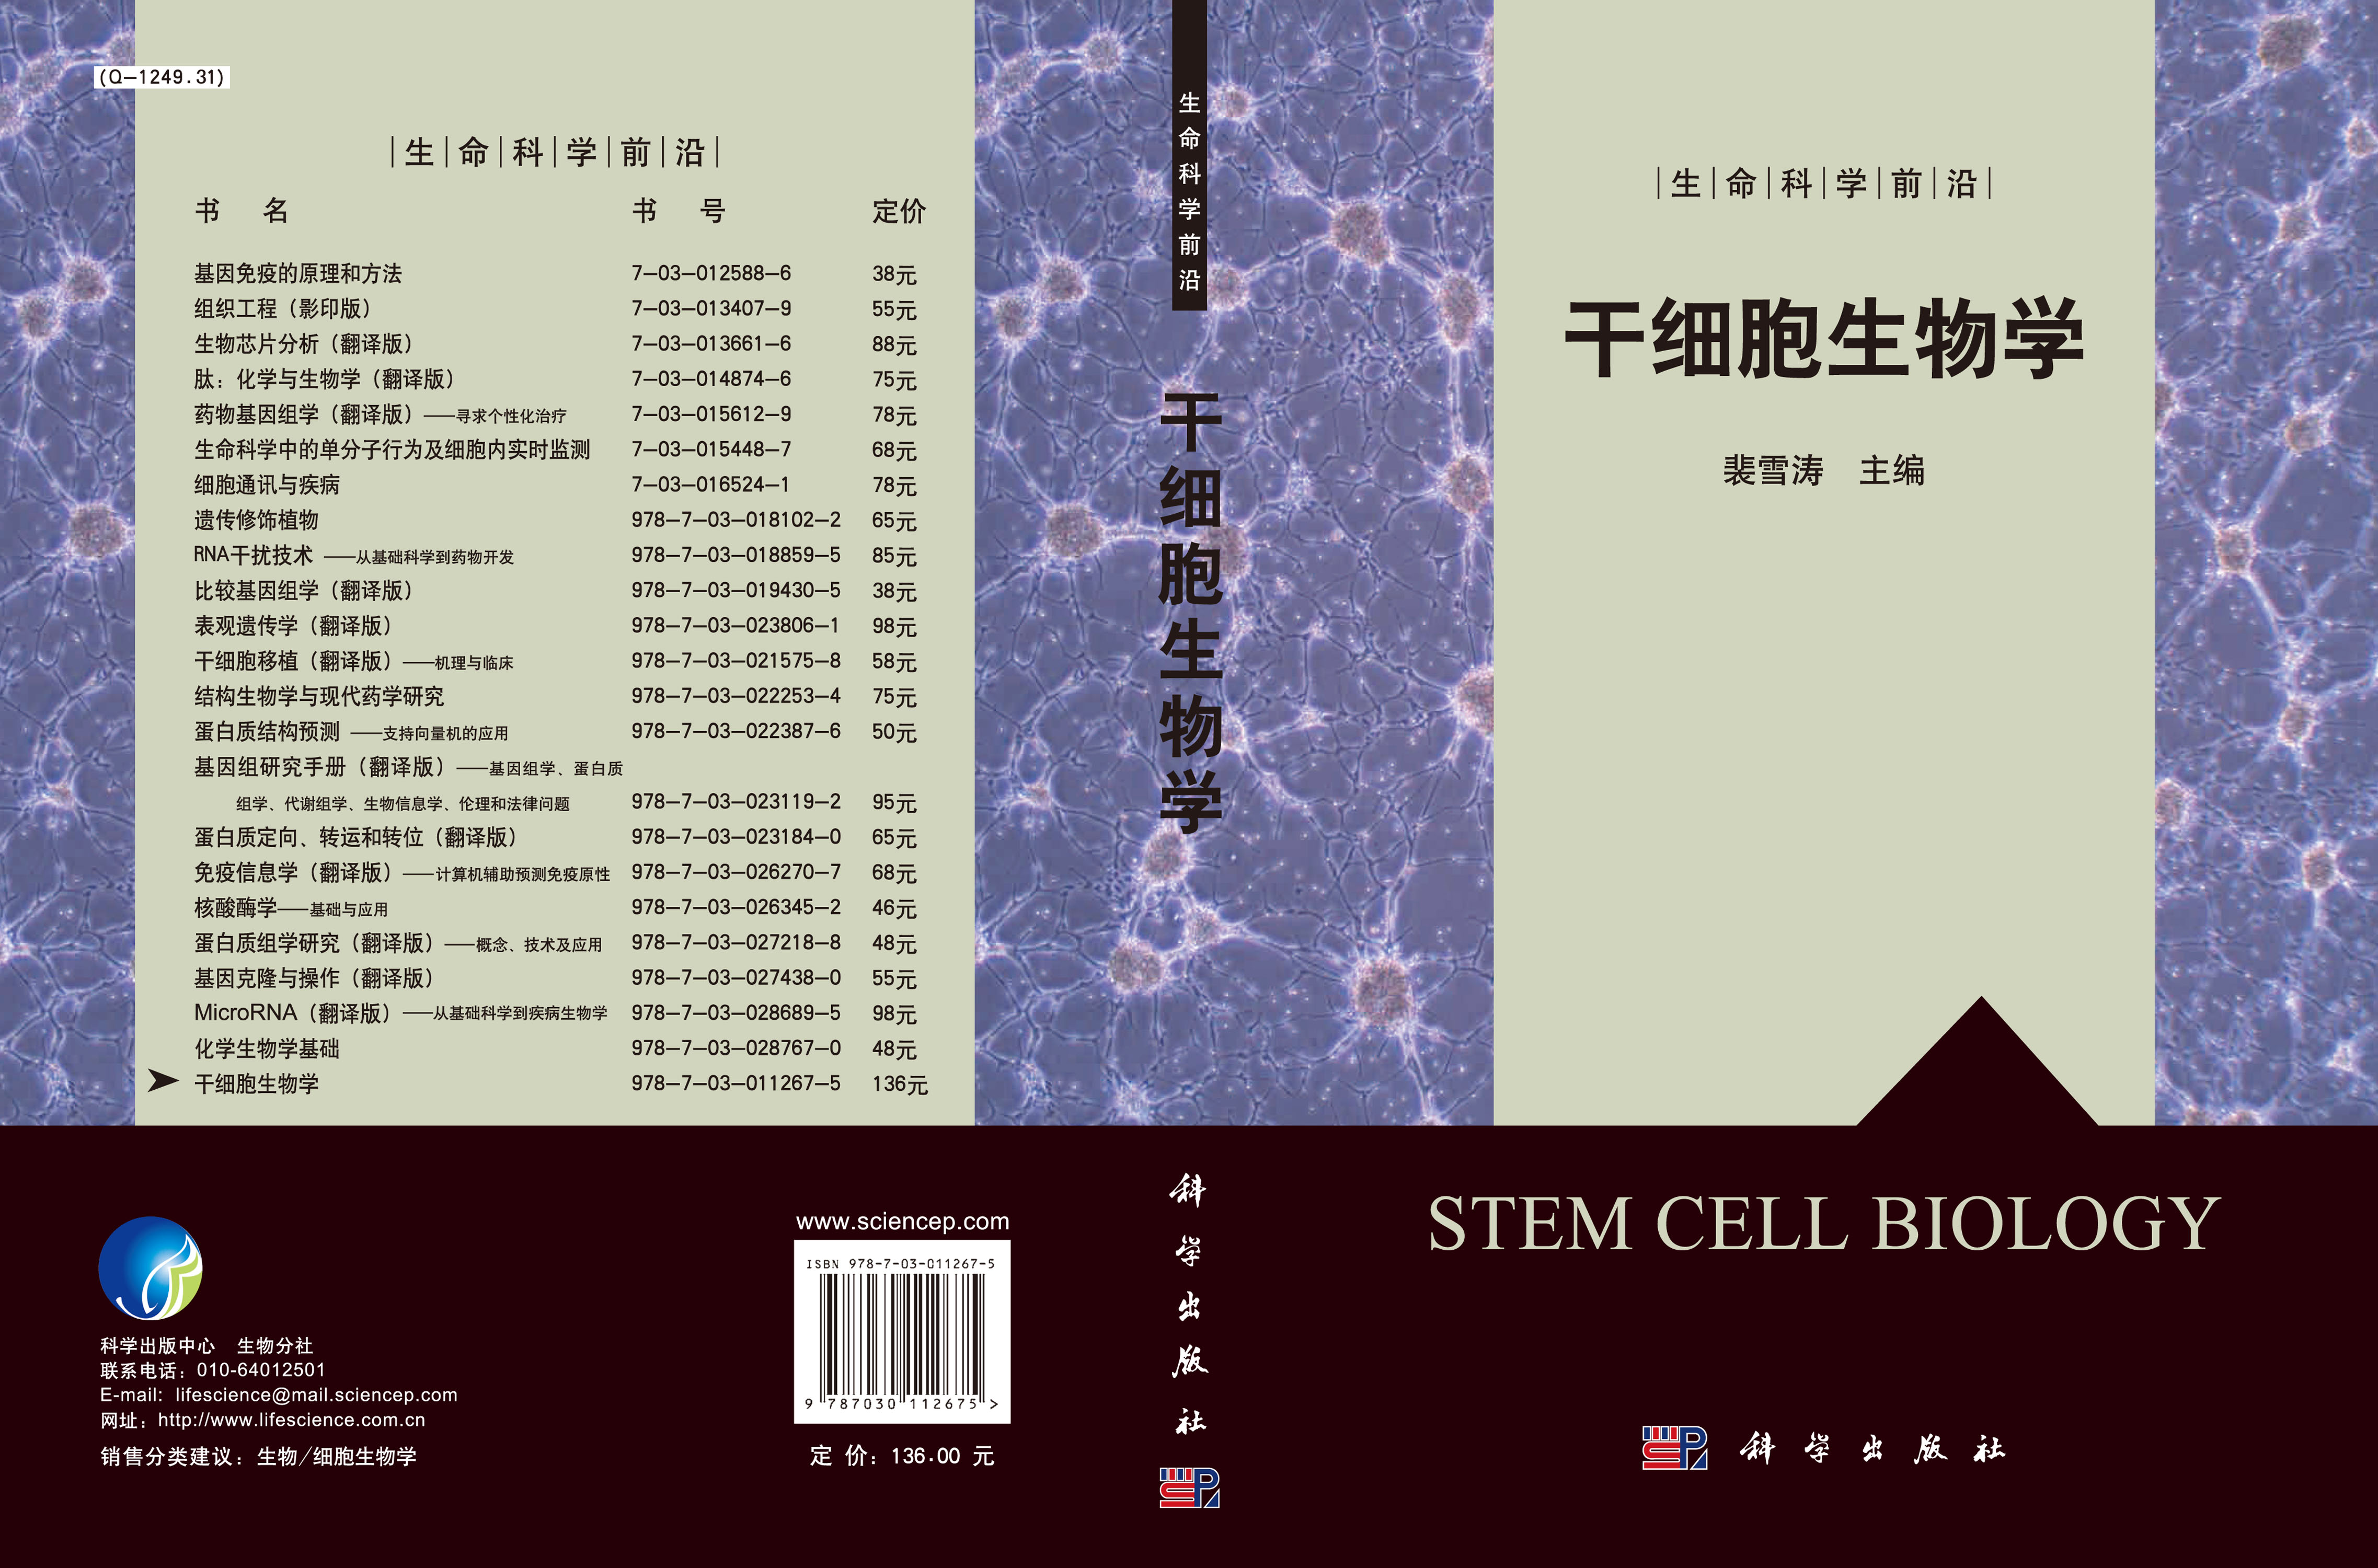 干细胞生物学